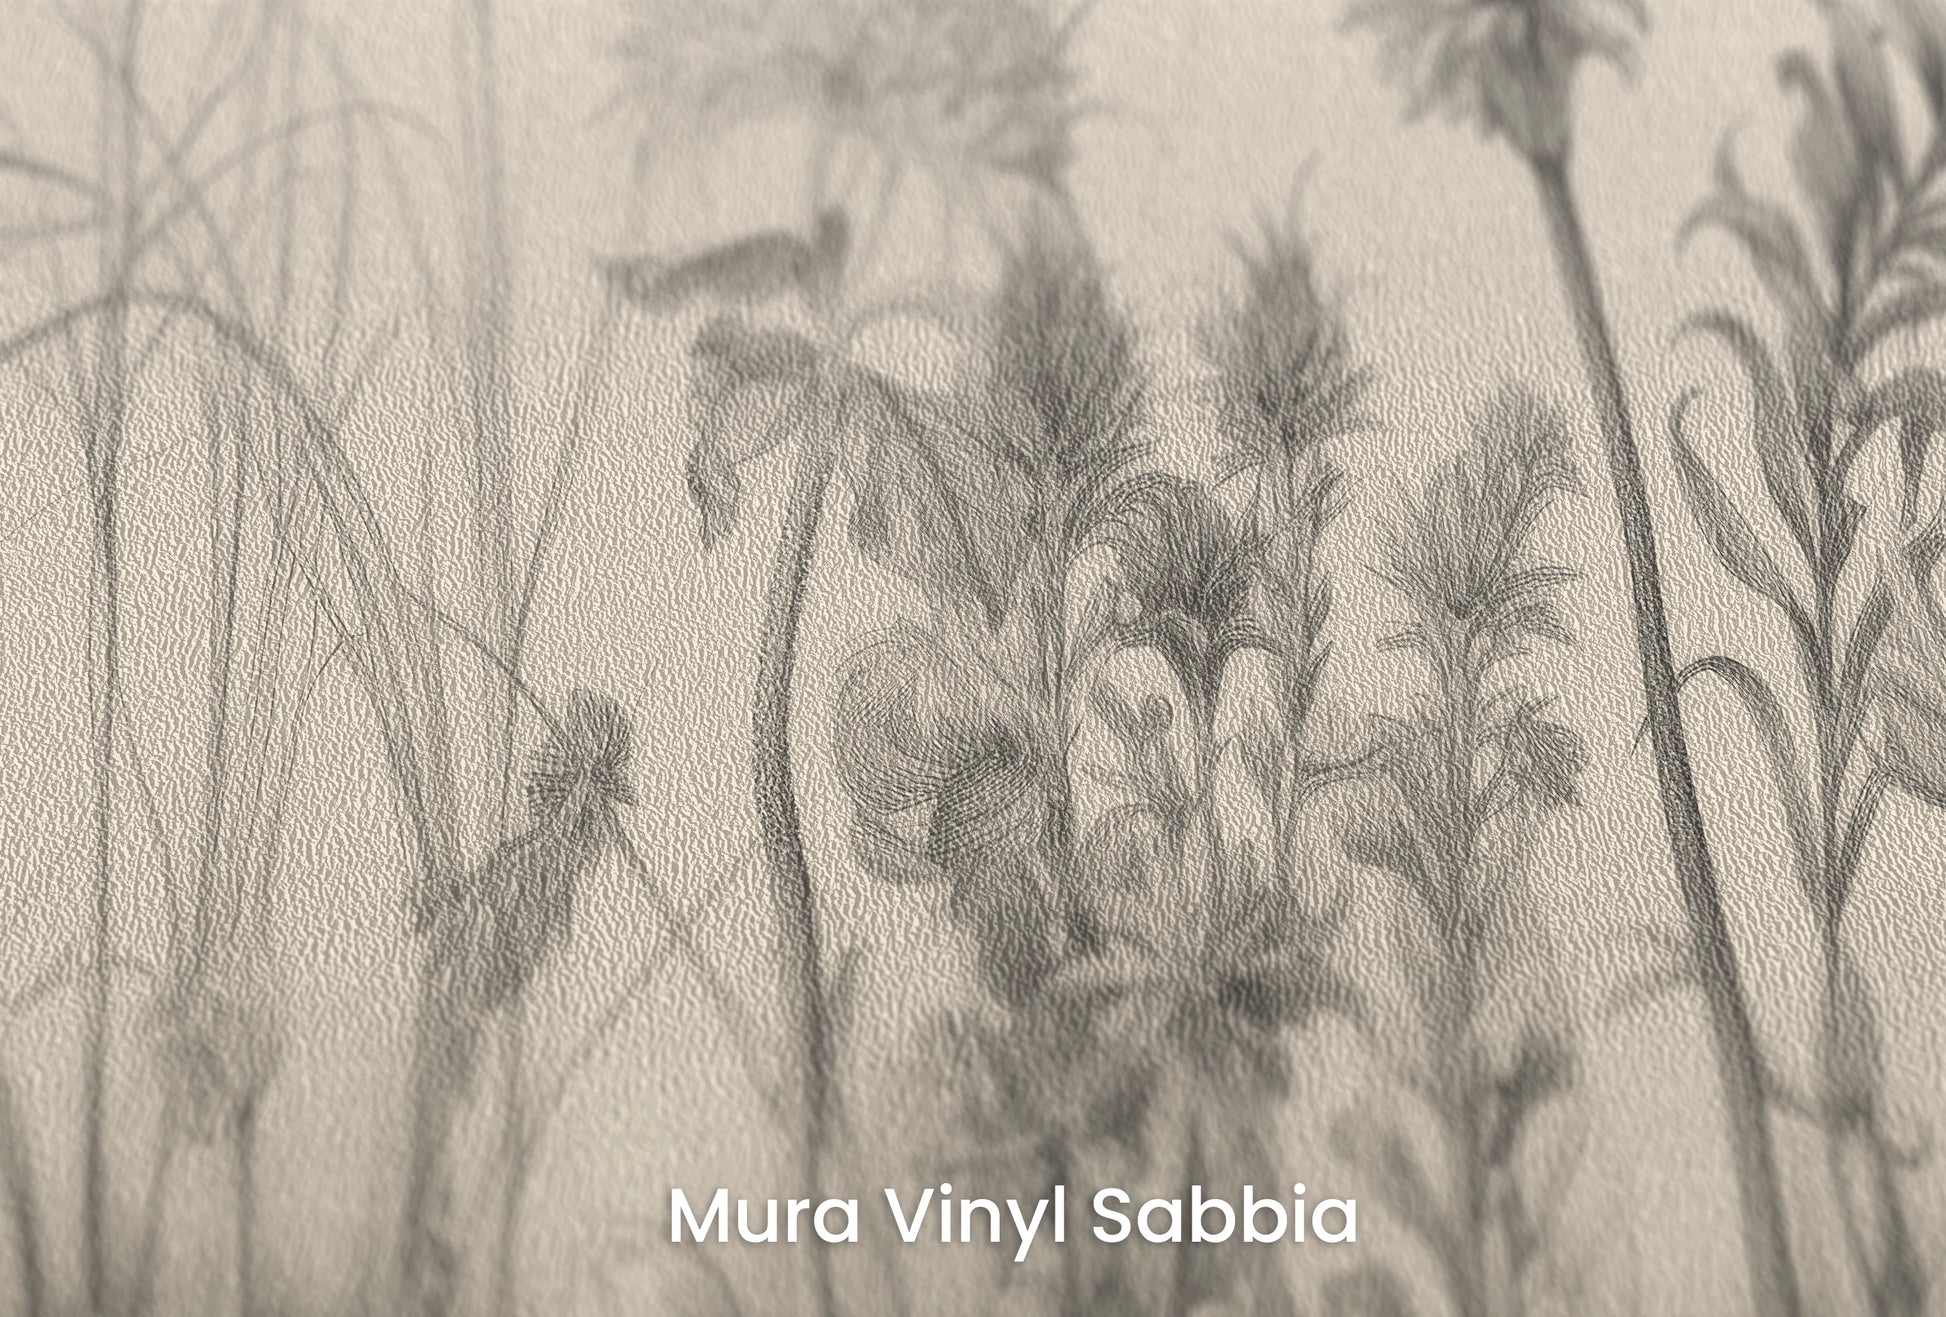 Zbliżenie na artystyczną fototapetę o nazwie Flora in Monochrome na podłożu Mura Vinyl Sabbia struktura grubego ziarna piasku.